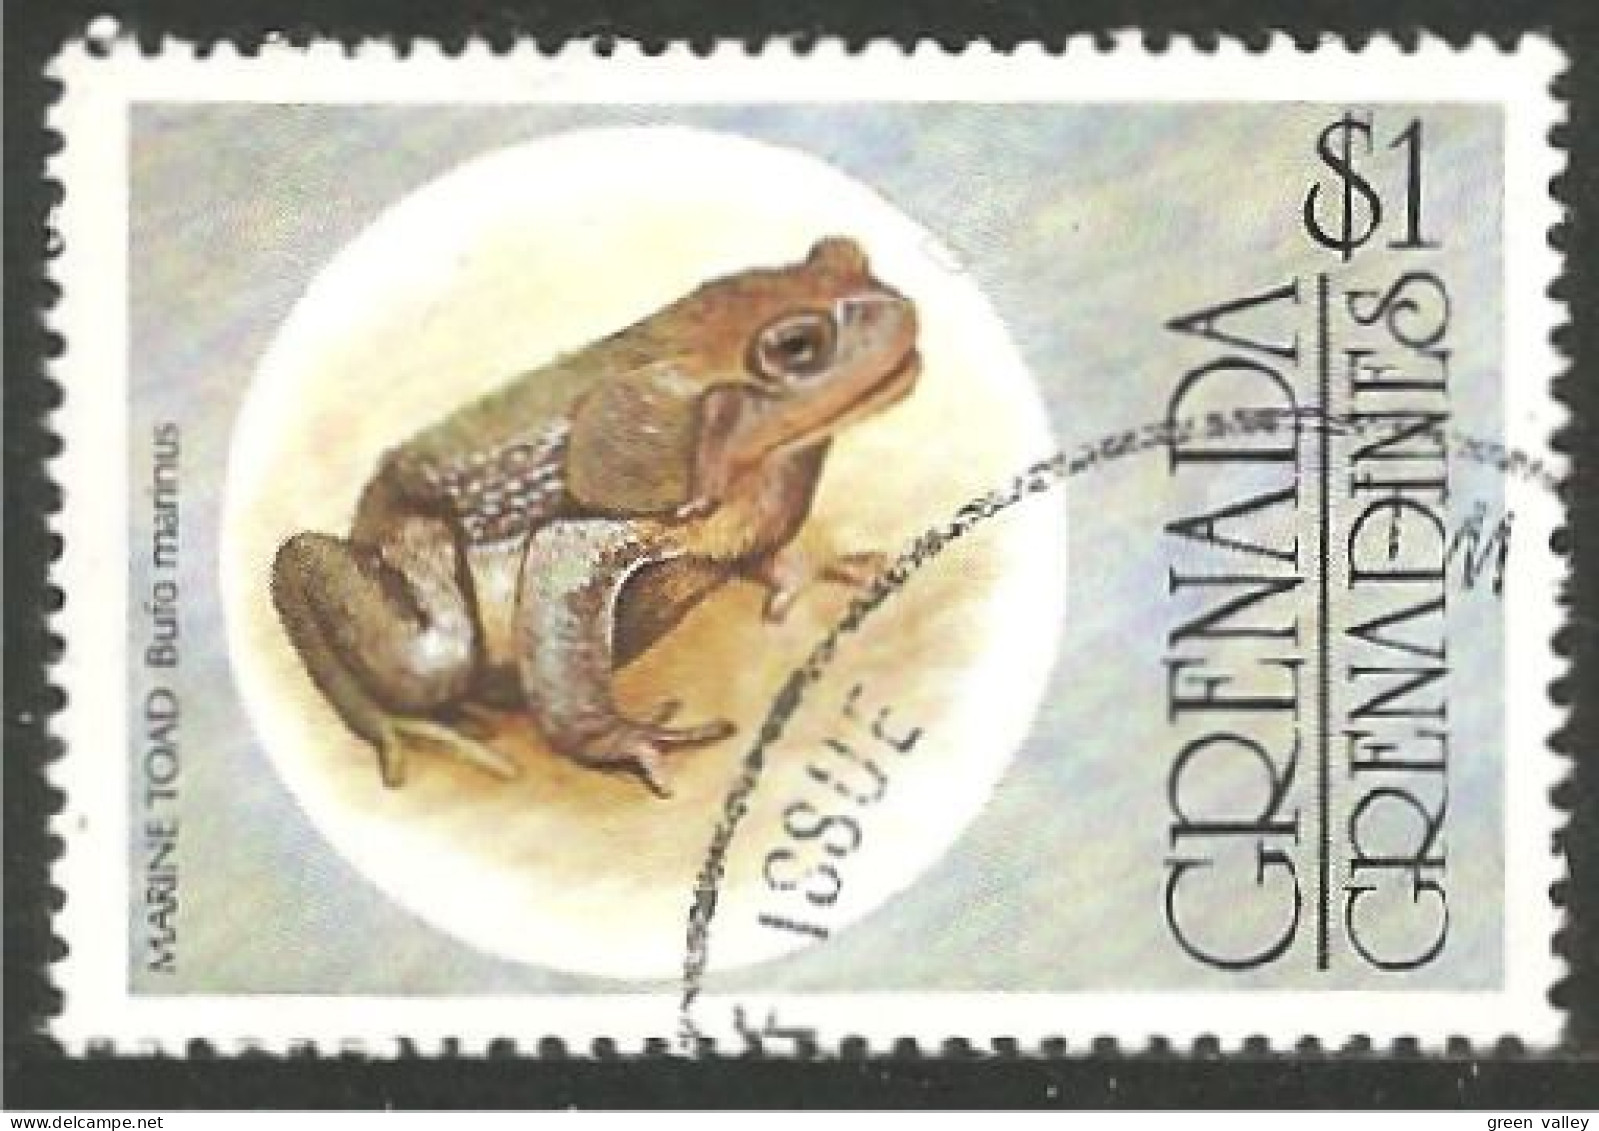 RP-12 Grenada $1.00 Grenouille Frog Rana Kikker Frosch - Kikkers